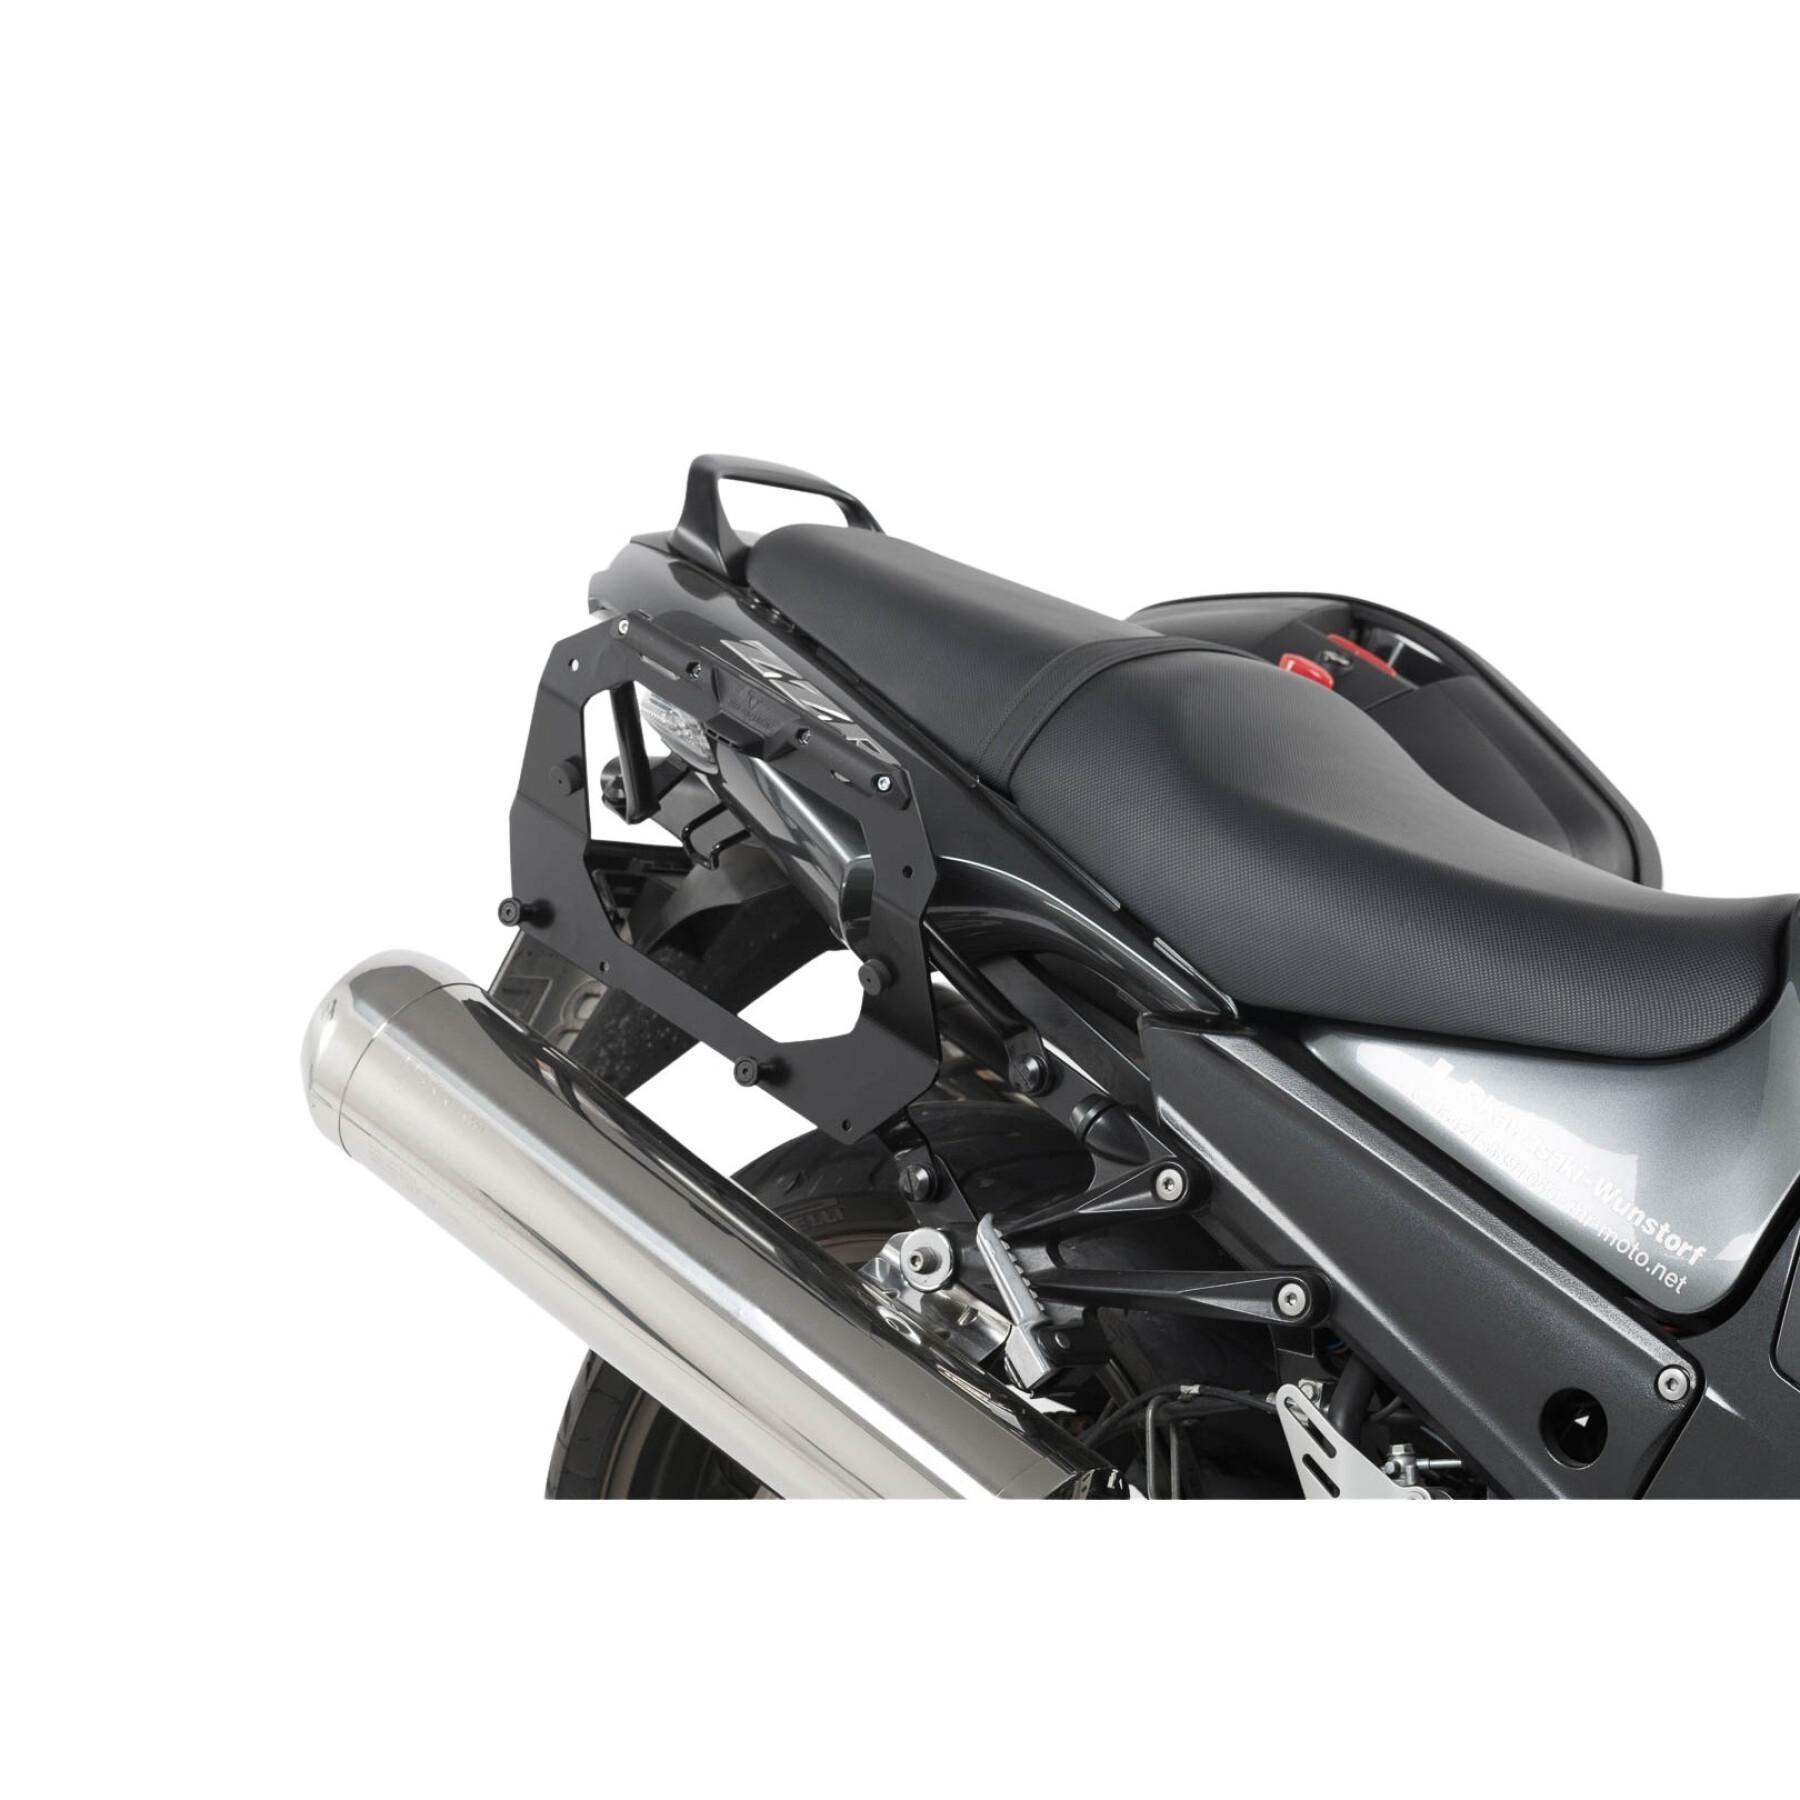 Soporte de la maleta lateral de la moto Sw-Motech Evo Kawasaki Zzr 1400 (06-10)